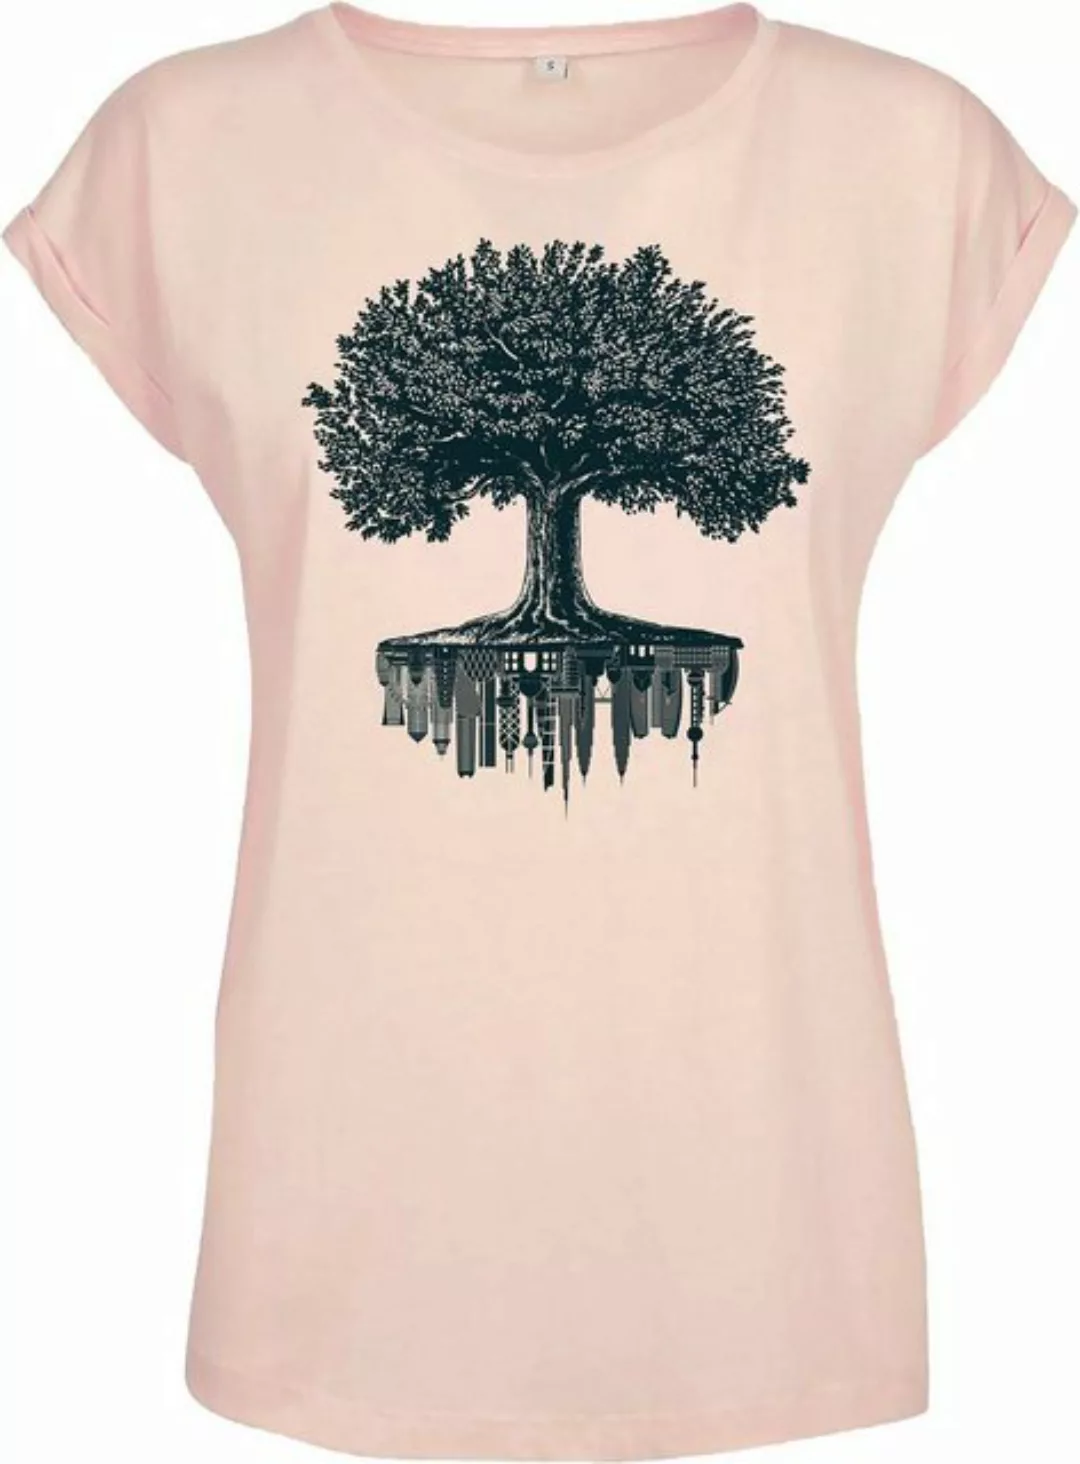 Baddery Print-Shirt Garten T-Shirt Damen : "Forest City" - Wald Natur Baum, günstig online kaufen